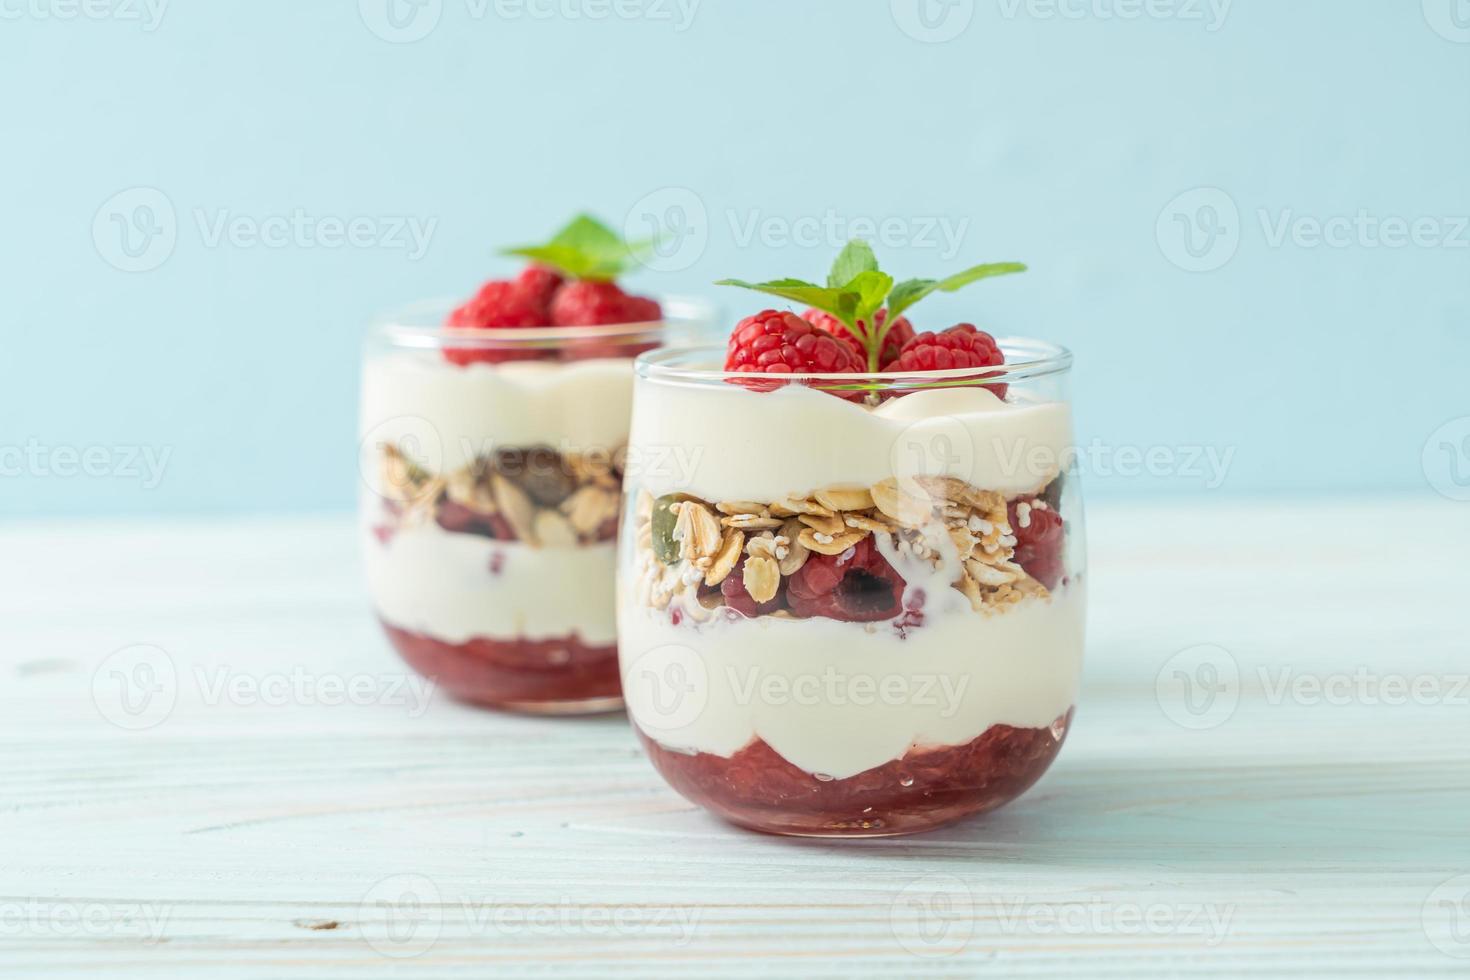 Framboesa fresca e iogurte com granola - estilo de comida saudável foto